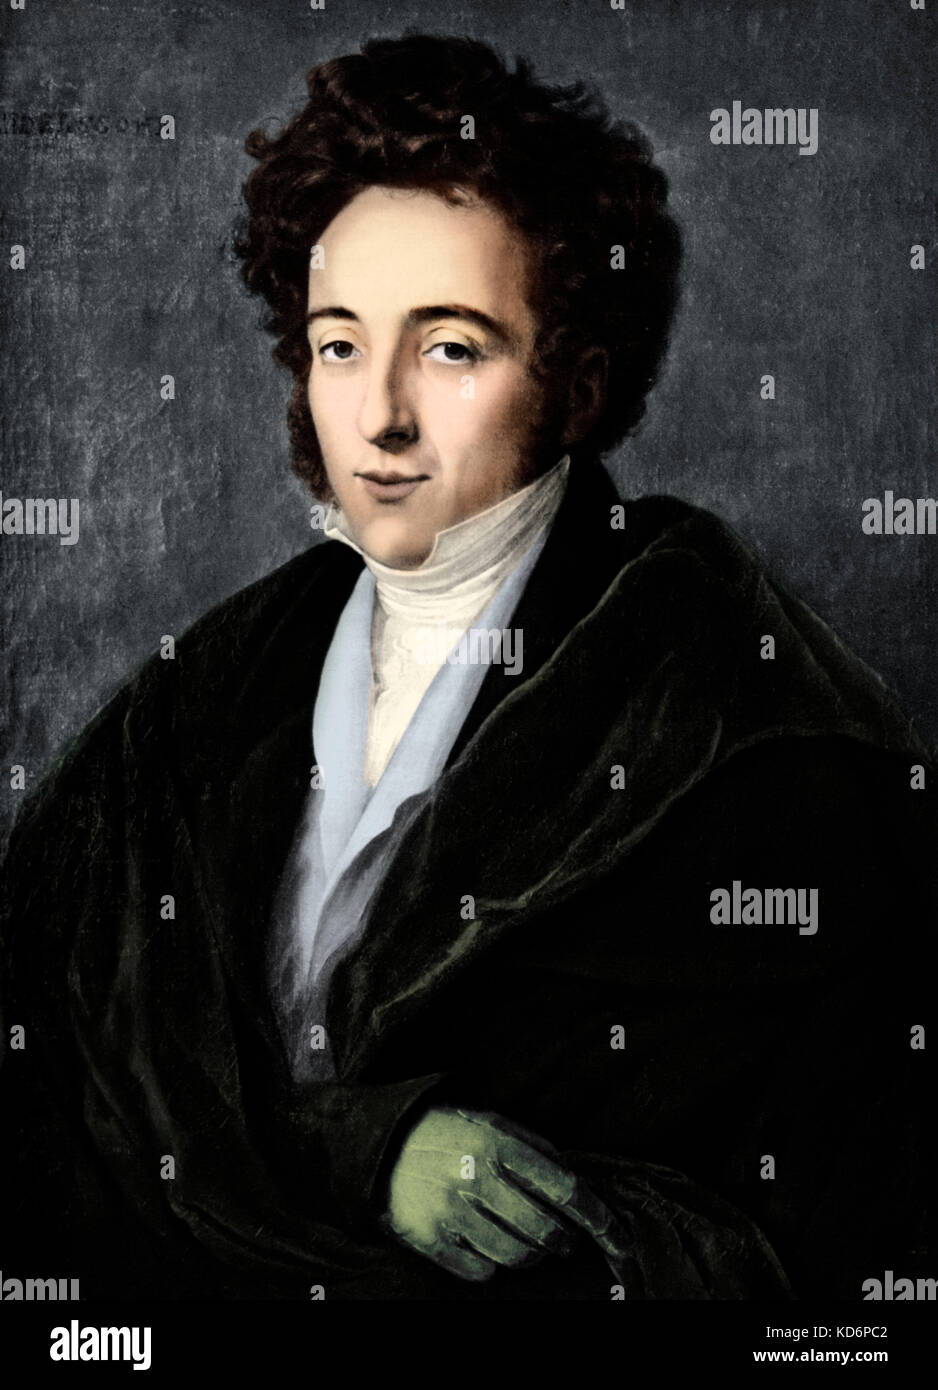 Felix Mendelssohn - portrait of German composer. 3 February 1809 - 4 November 1847. Stock Photo